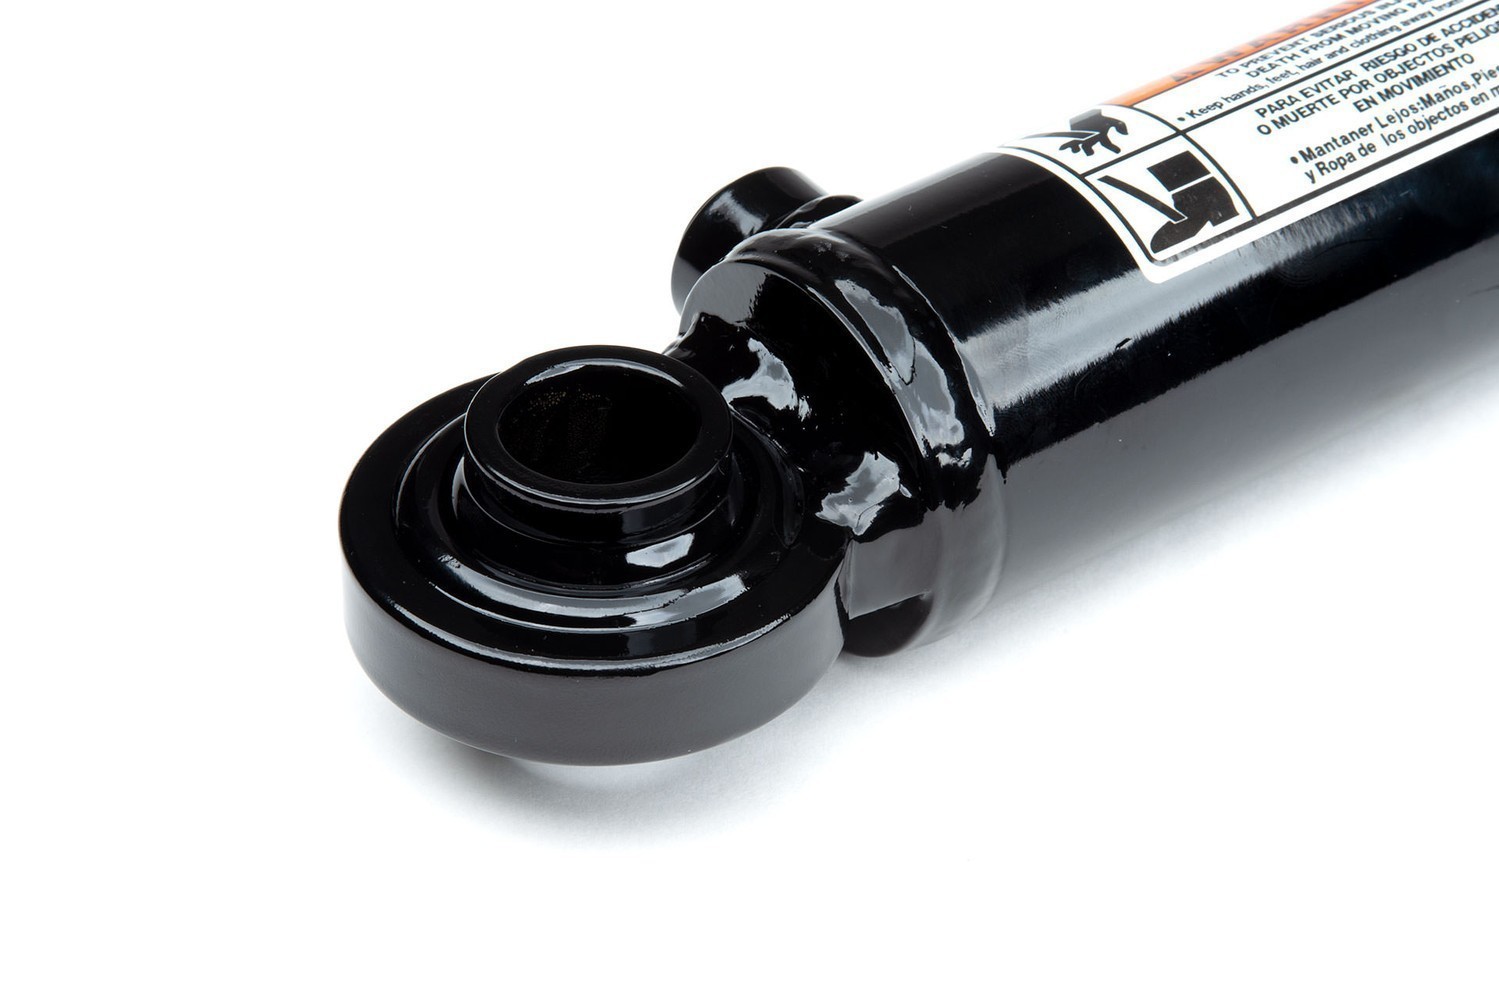 Maxim WSB Swivel Ball Welded Hydraulic Cylinder: 1.5" Bore x 8" Stroke - 1" Rod